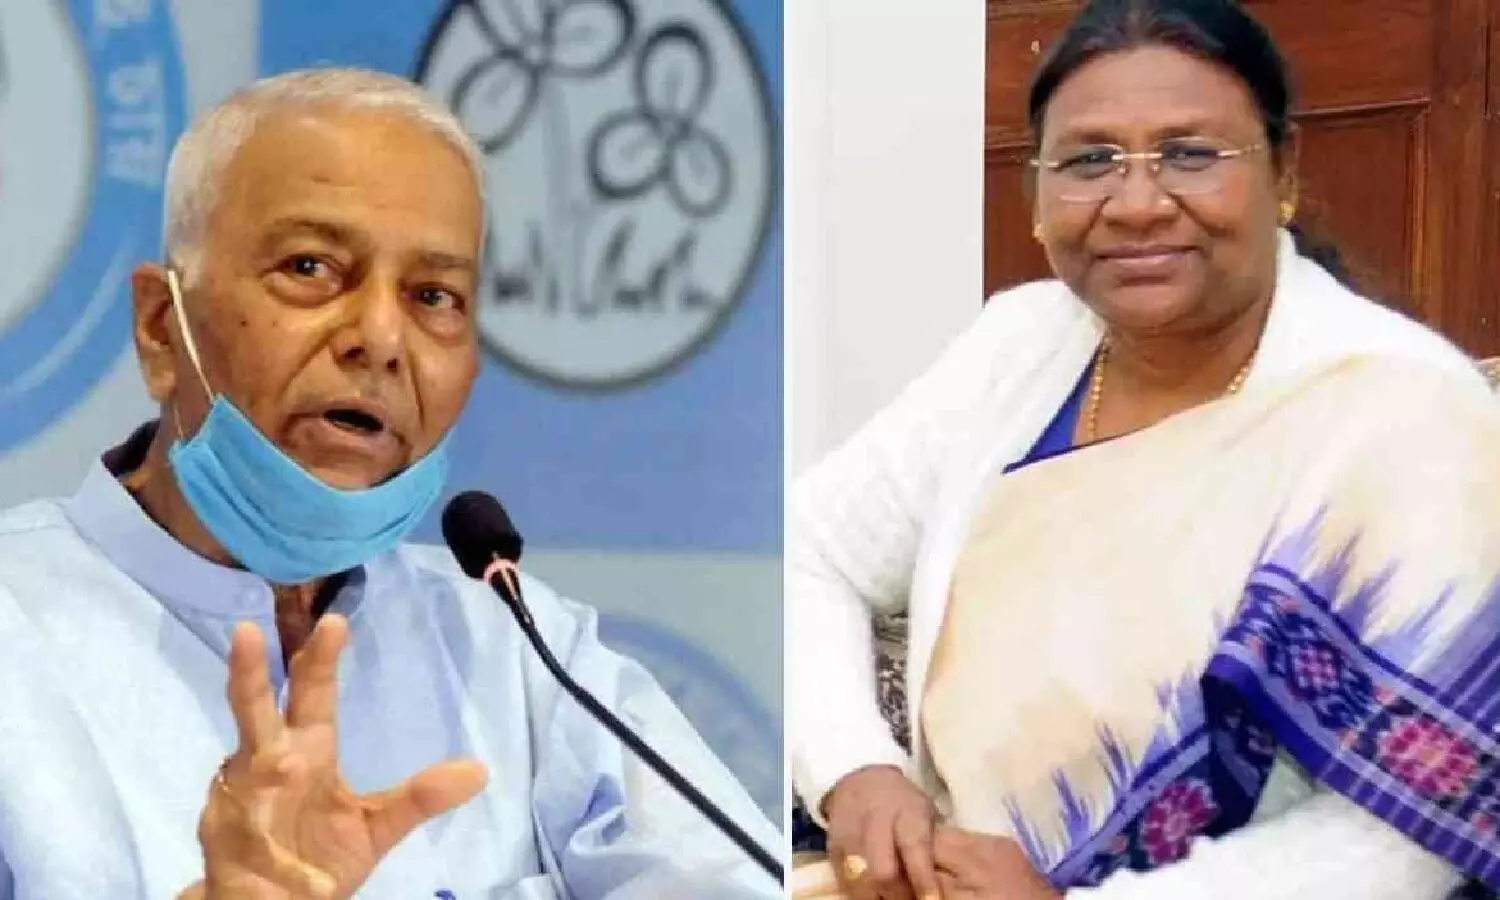 UPA candidate Yashwant Sinha and NDA candidate Dropadi murmu